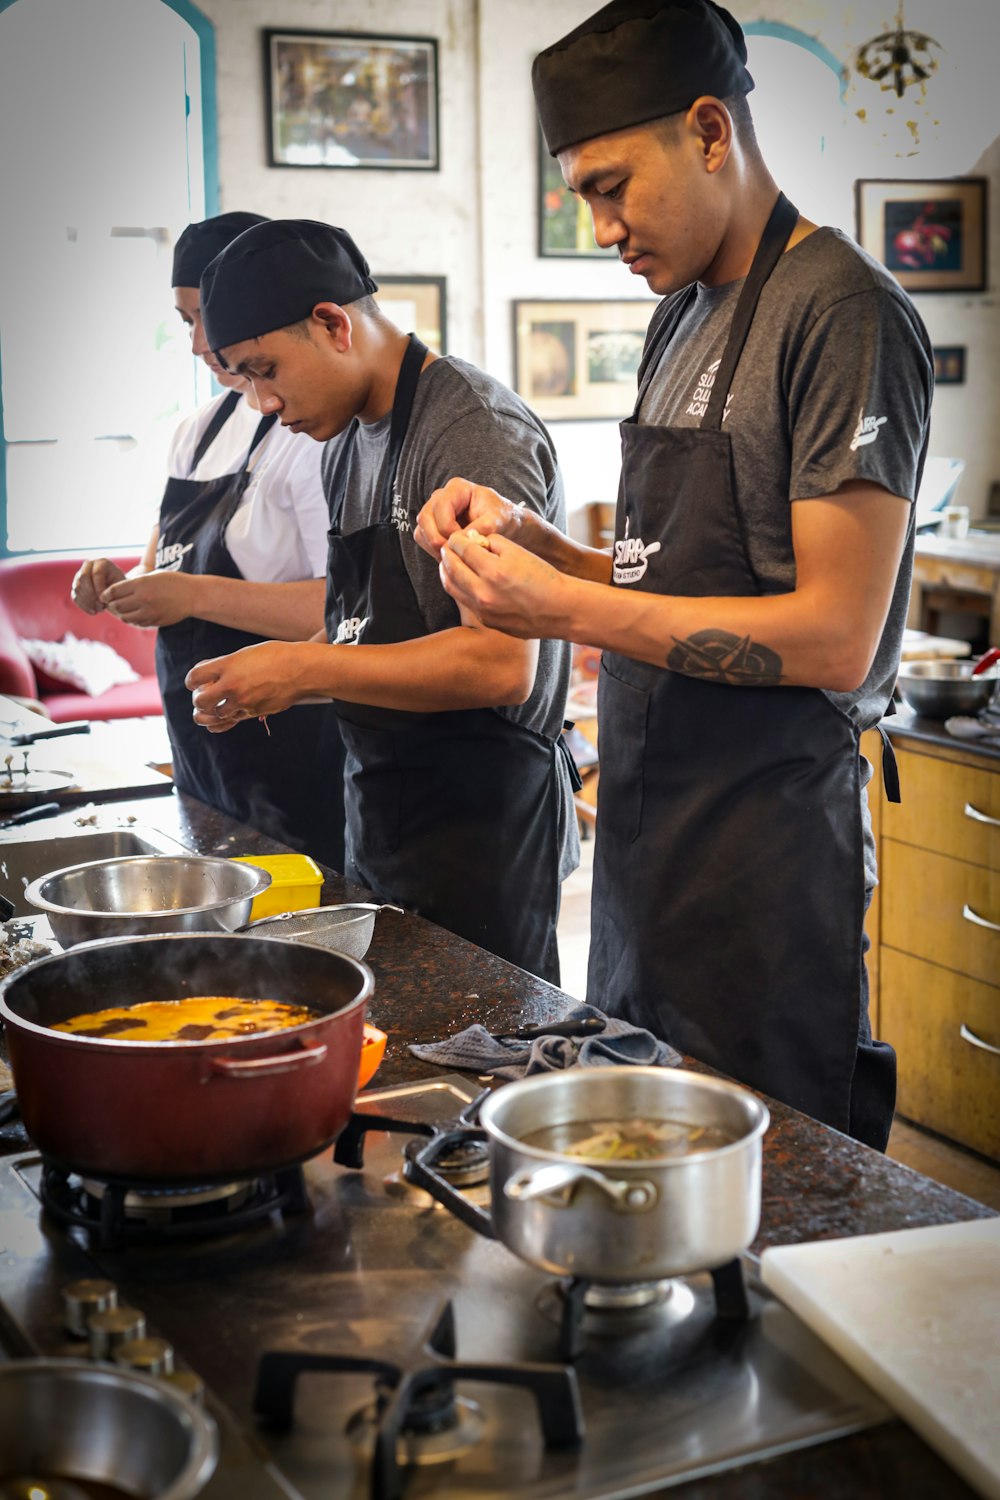 Un couple d’hommes debout dans une cuisine préparant de la nourriture